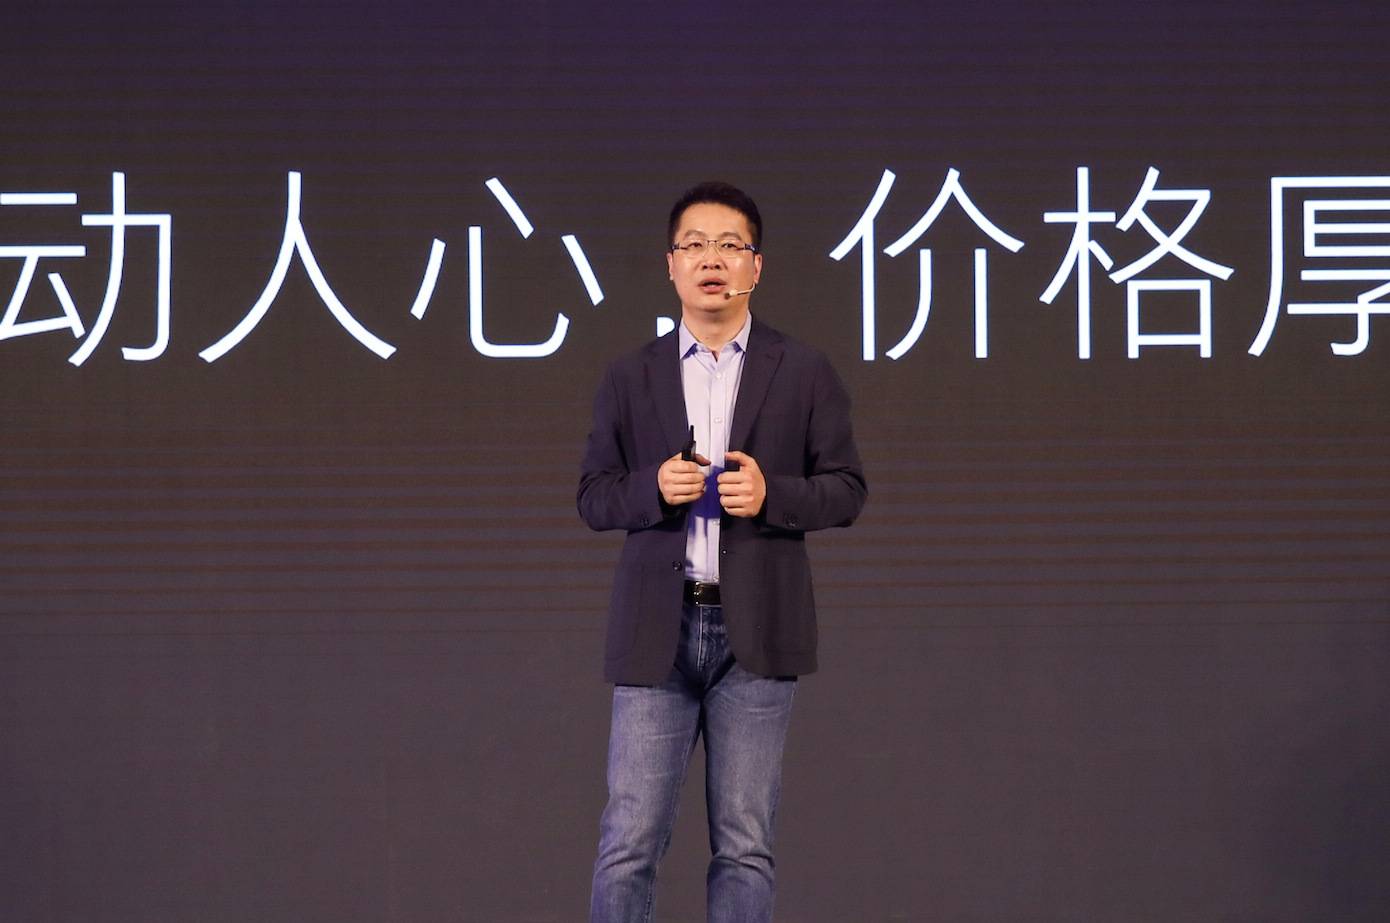 111 - Zhang Wenhong interpreta il motivo per cui ritiene che ci siano più polmoni bianchi / i termometri a mercurio verranno interrotti / iPhone 15 o la durata della batteria verrà notevolmente migliorata